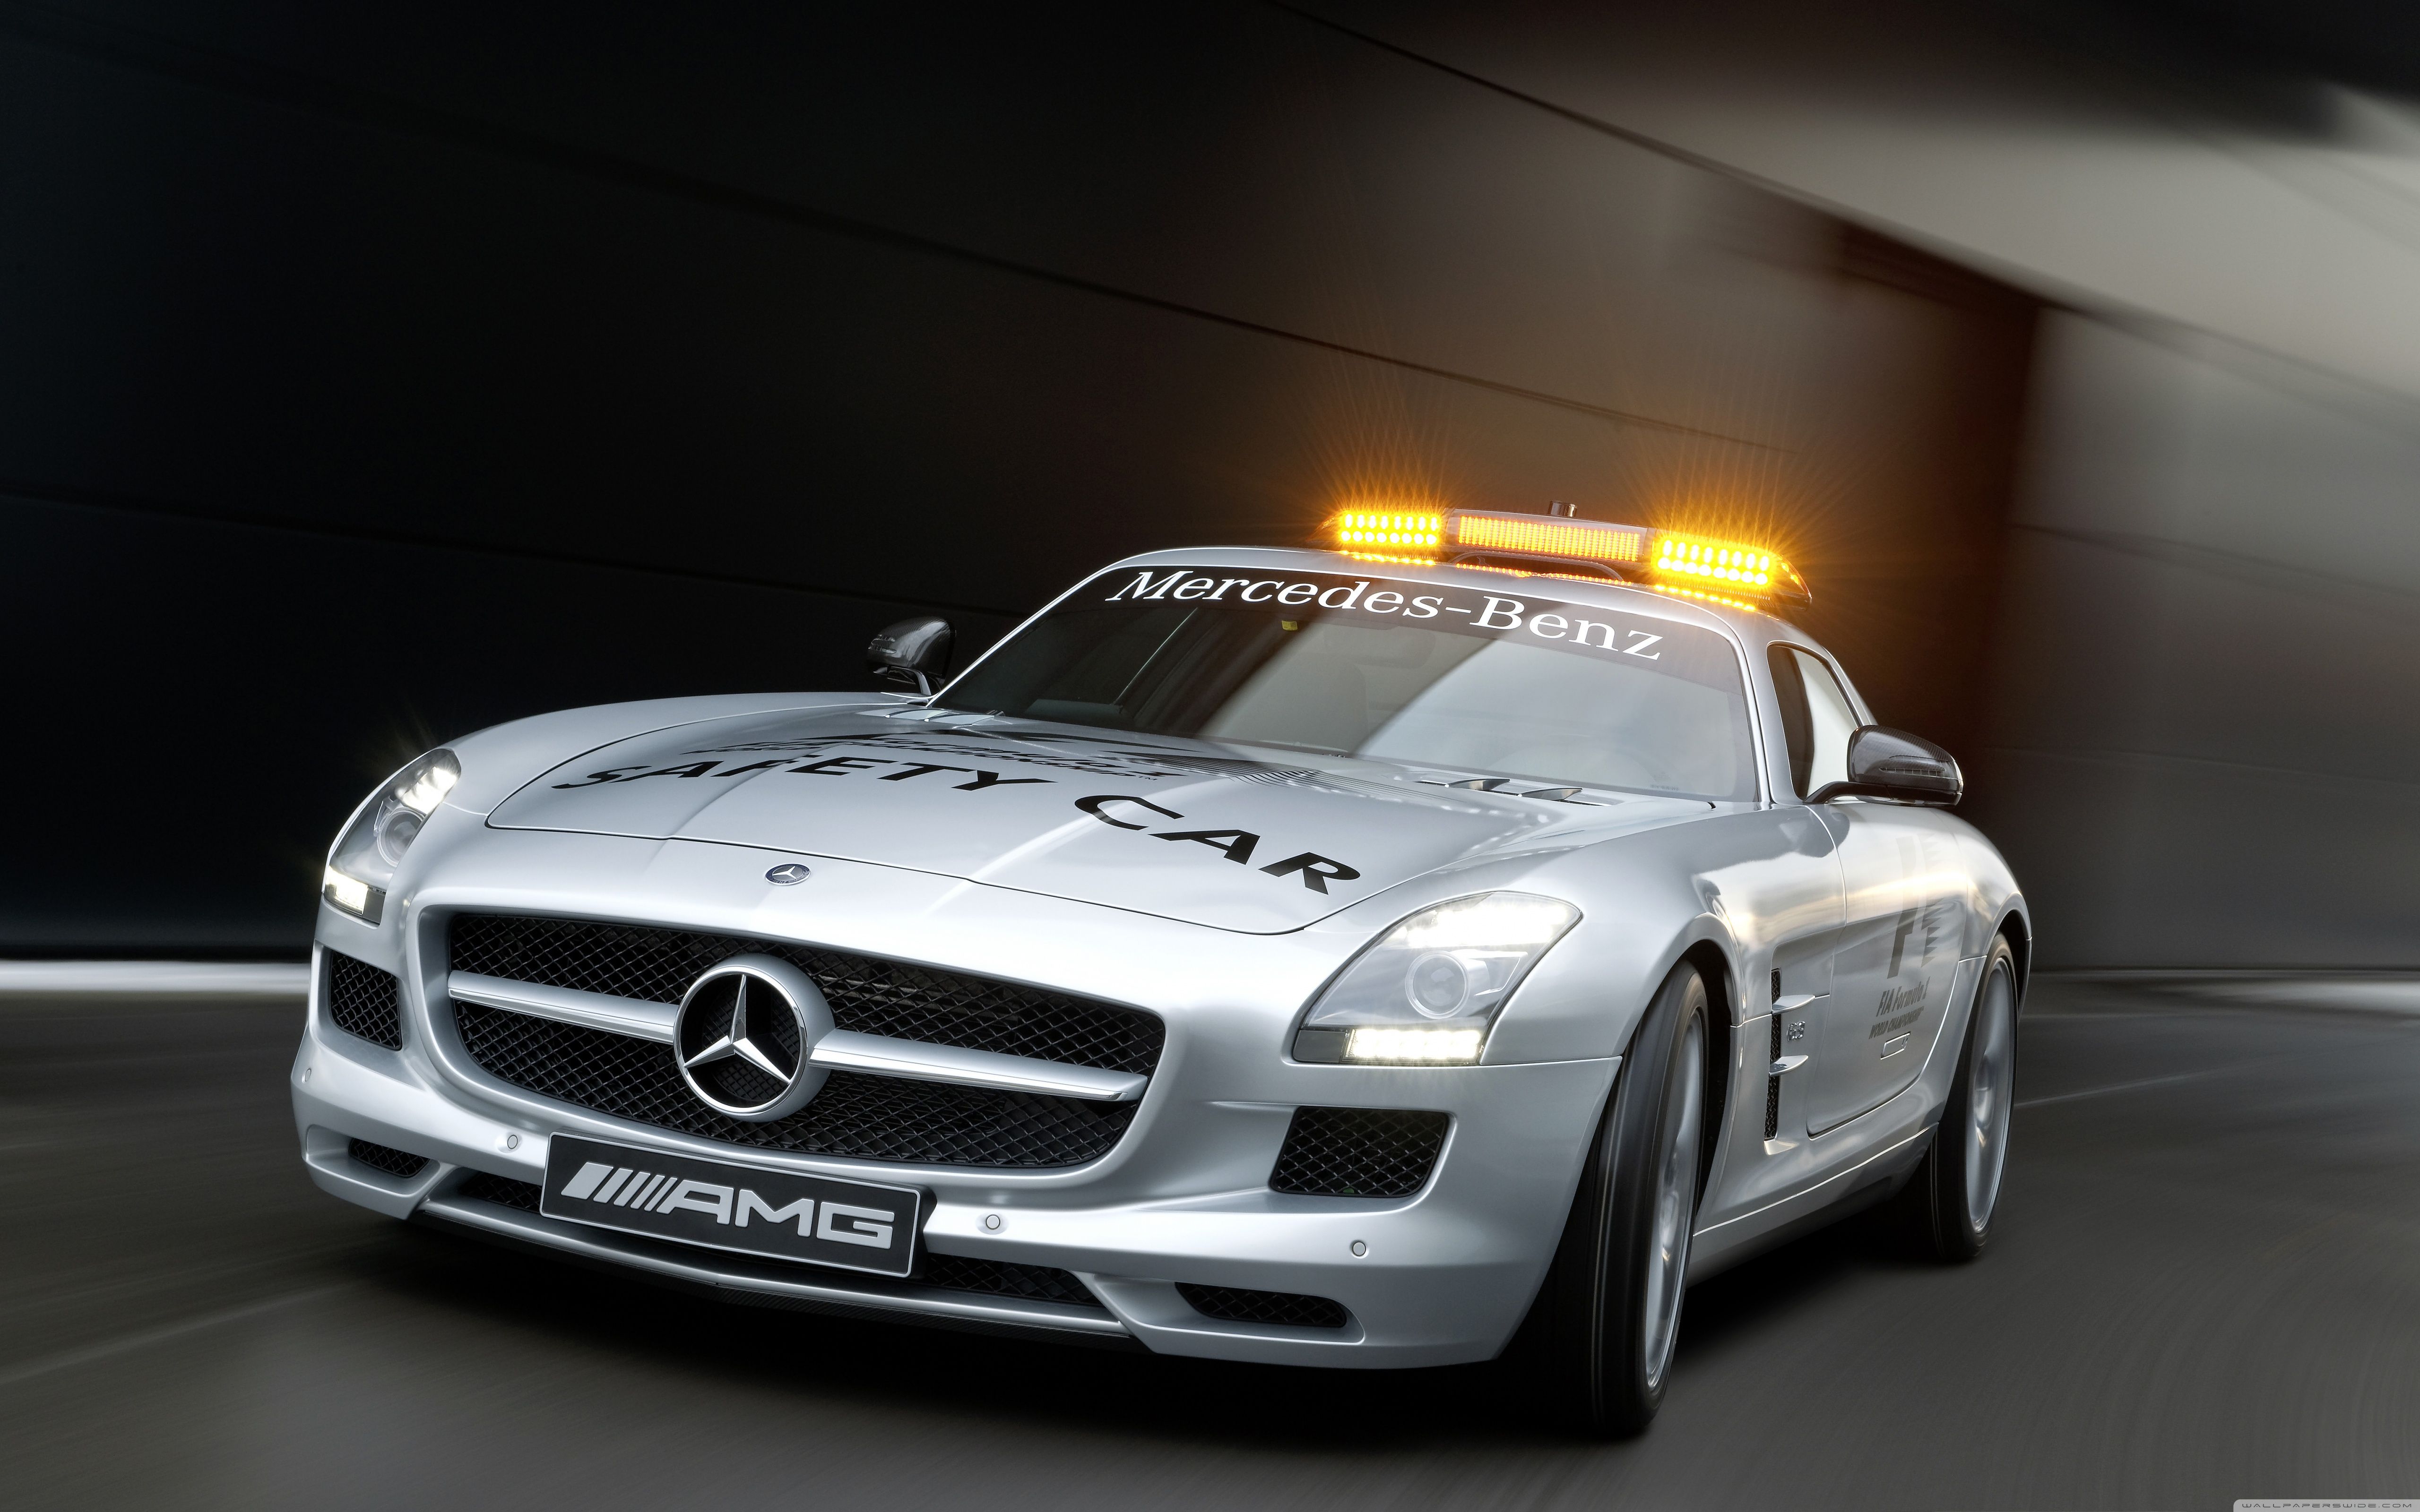 Mercedes SLS AMG Police Car Ultra HD Desktop Background Wallpaper for 4K UHD TV, Tablet